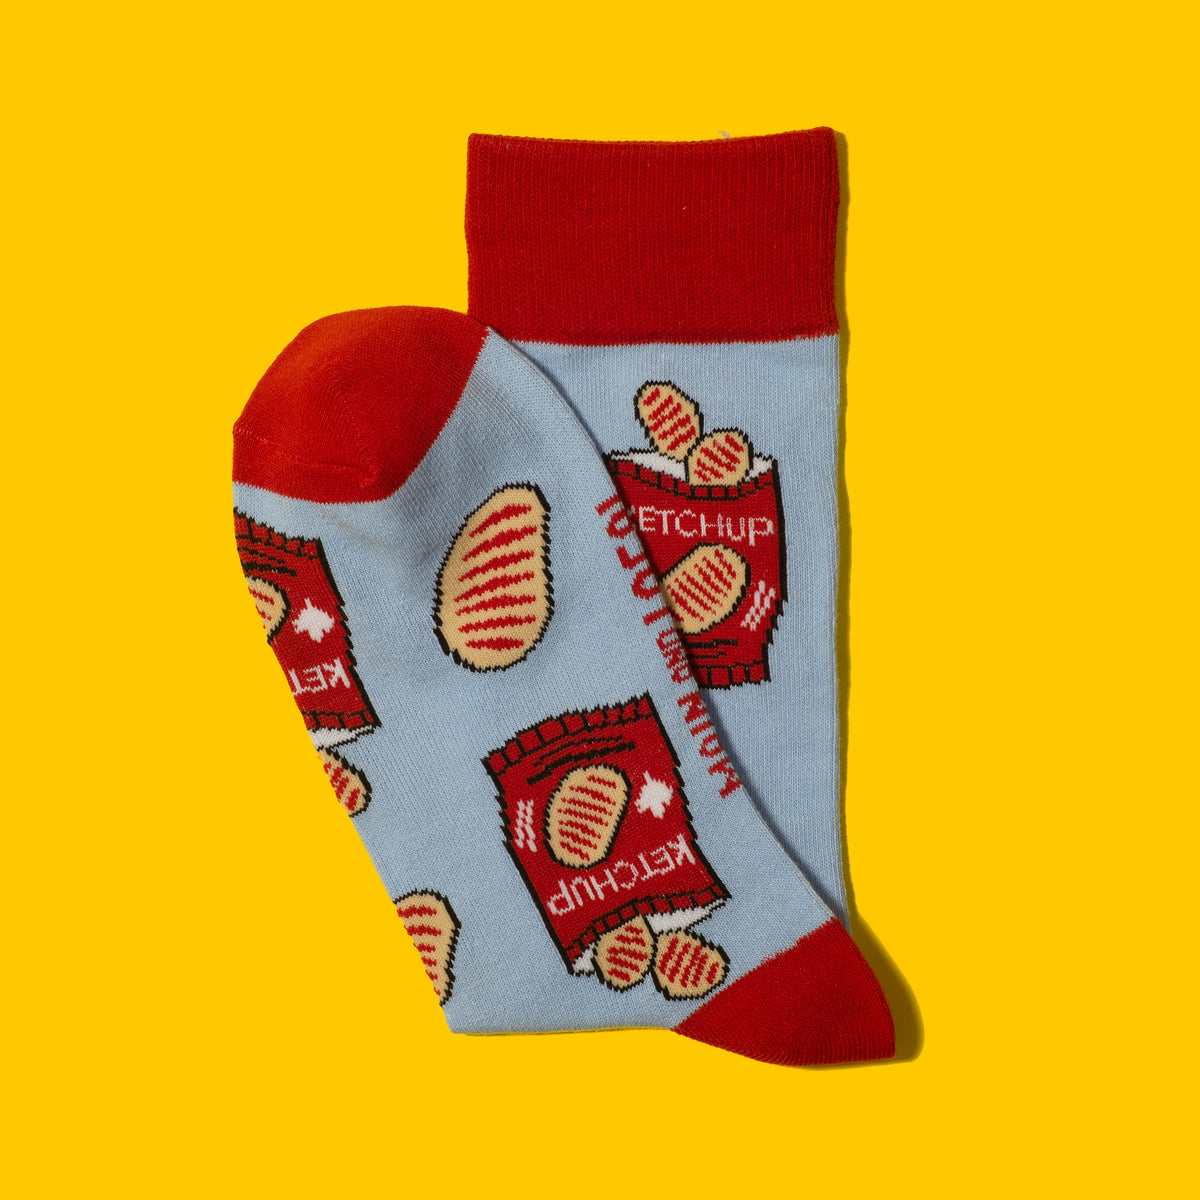 Canadian Ketchup Chips Socks